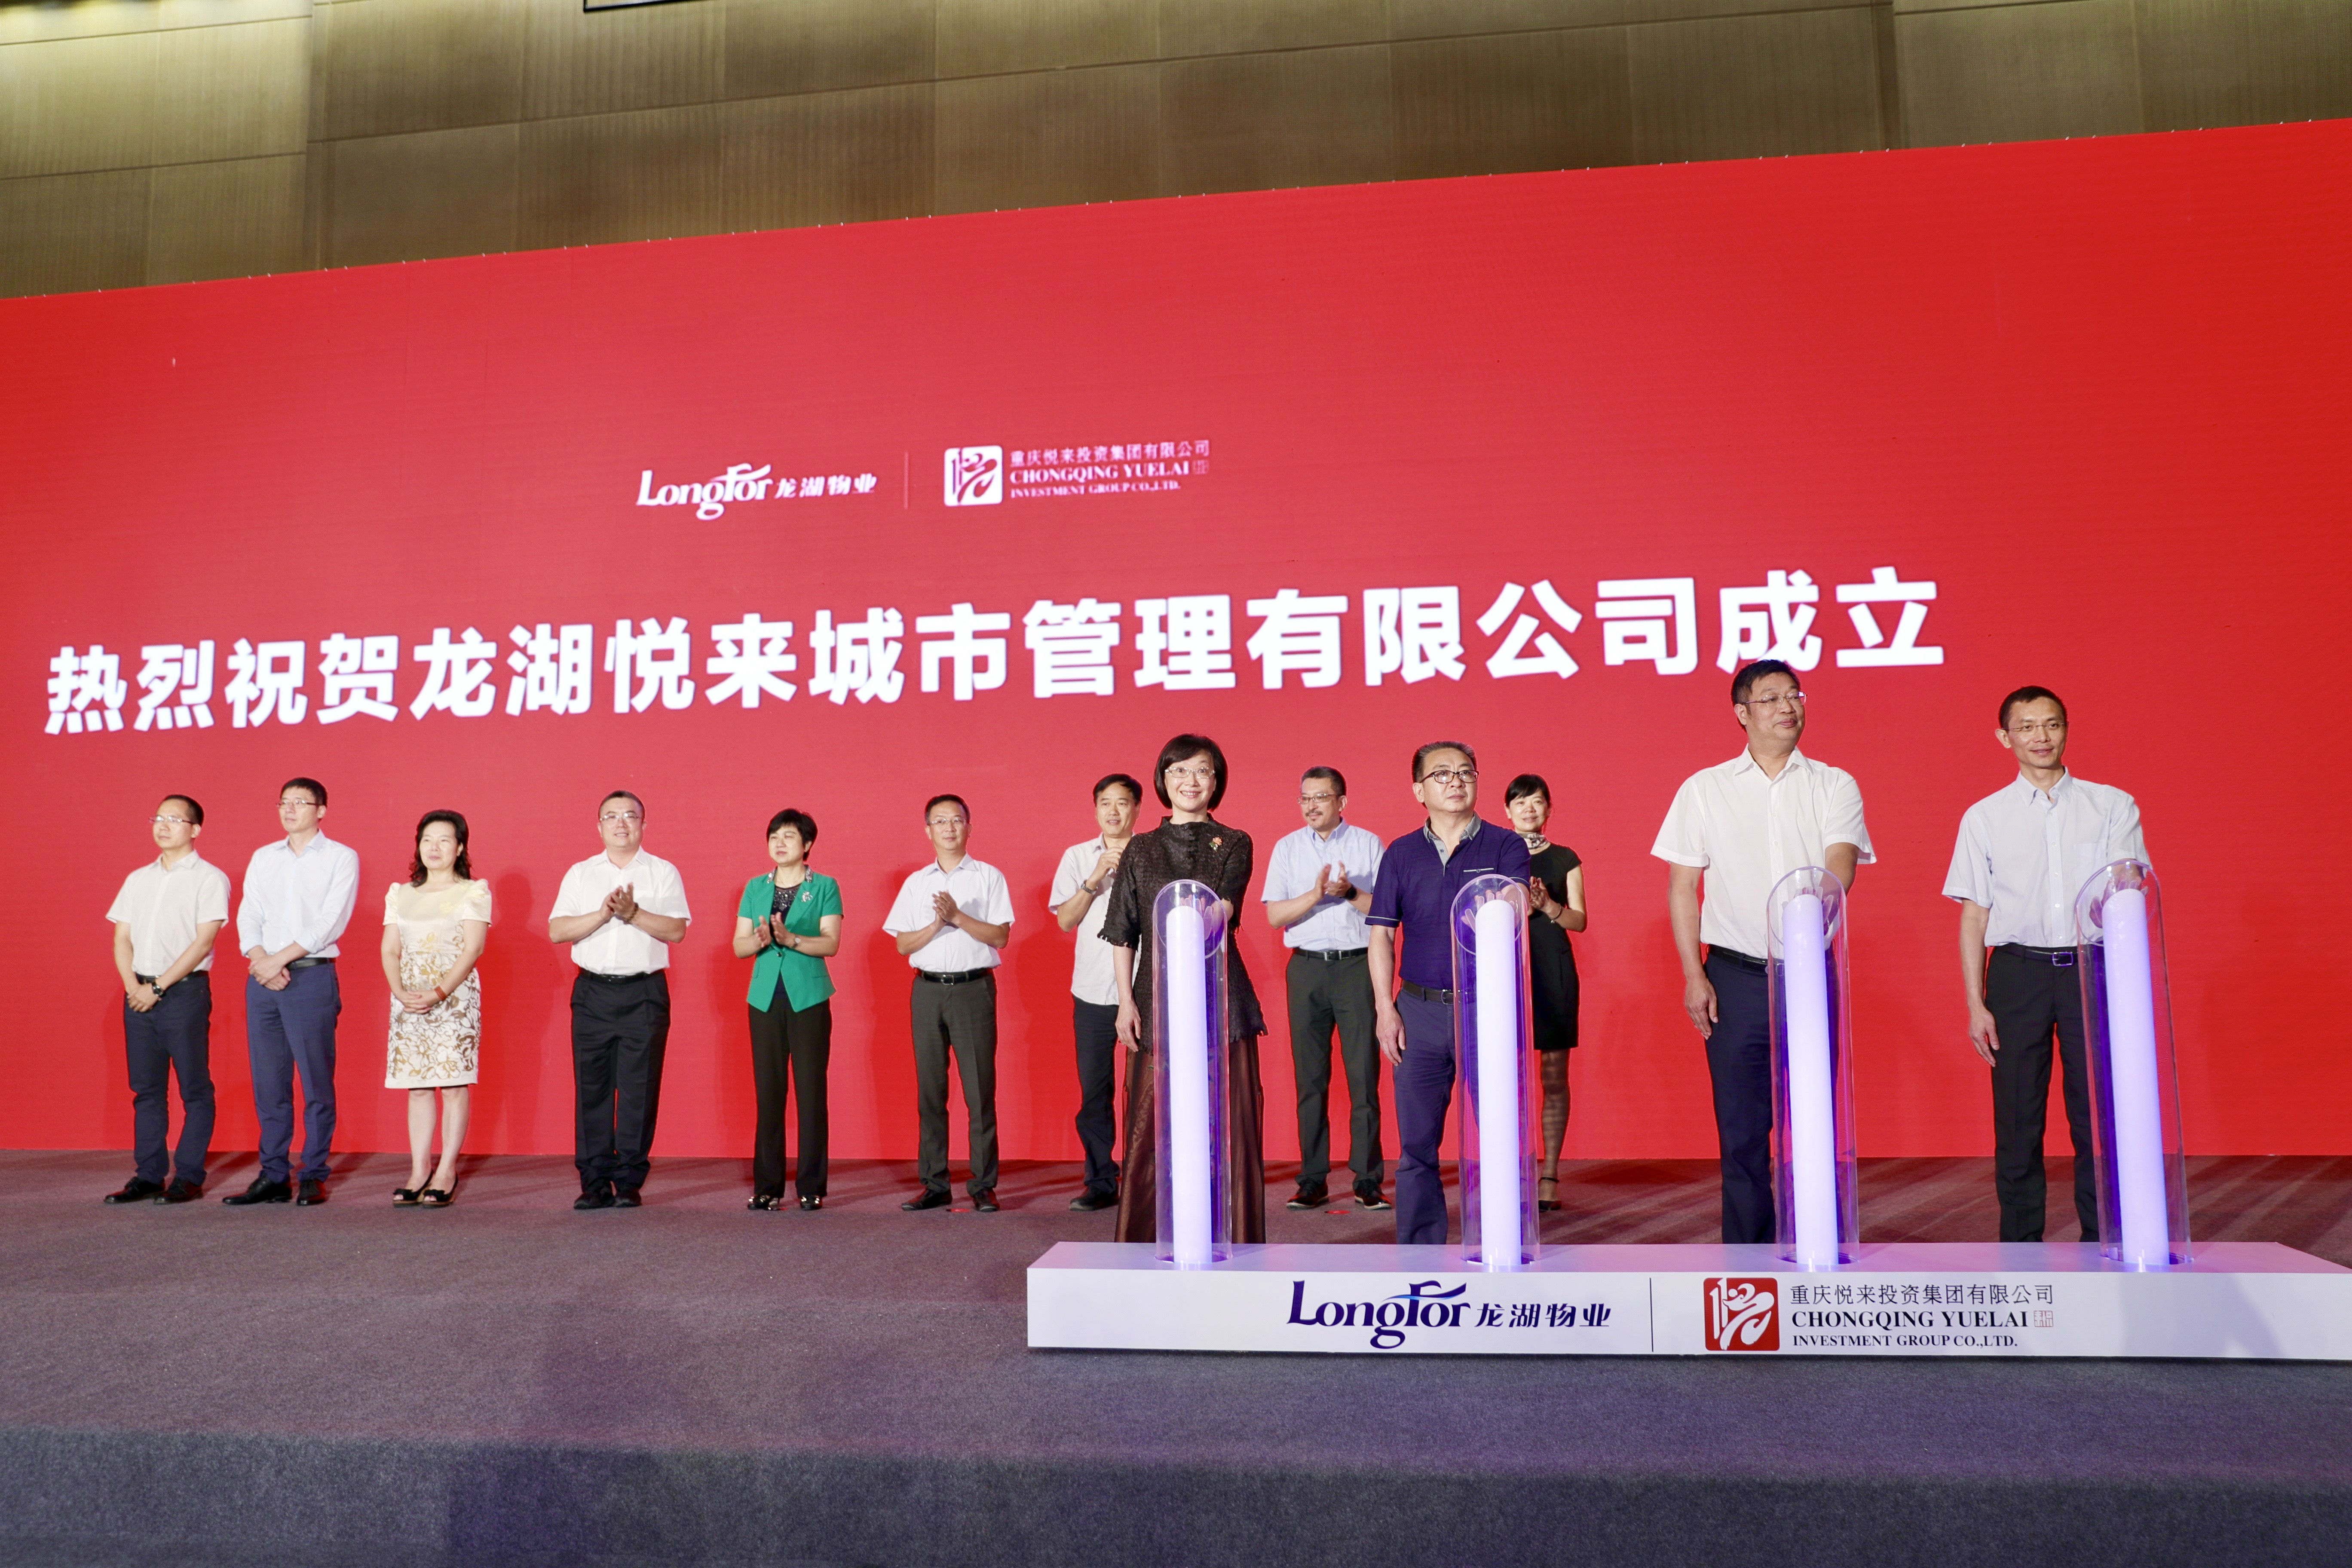 全国首家新型城市服务企业在重庆挂牌 龙湖创启城市服务新序章
